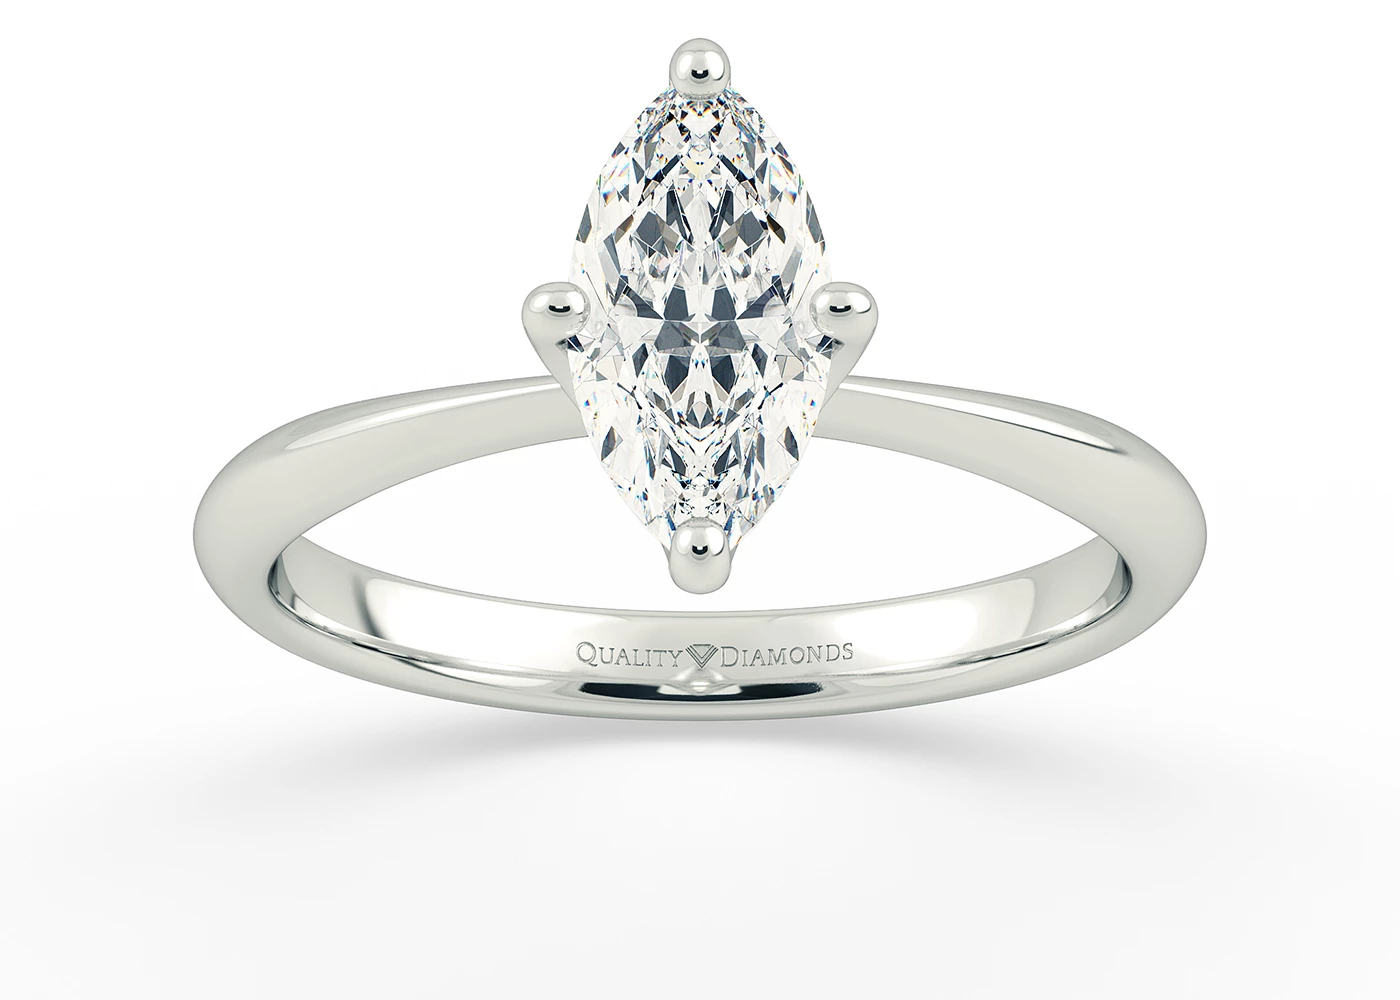 Half Carat Marquise Solitaire Diamond Engagement Ring in Platinum 950